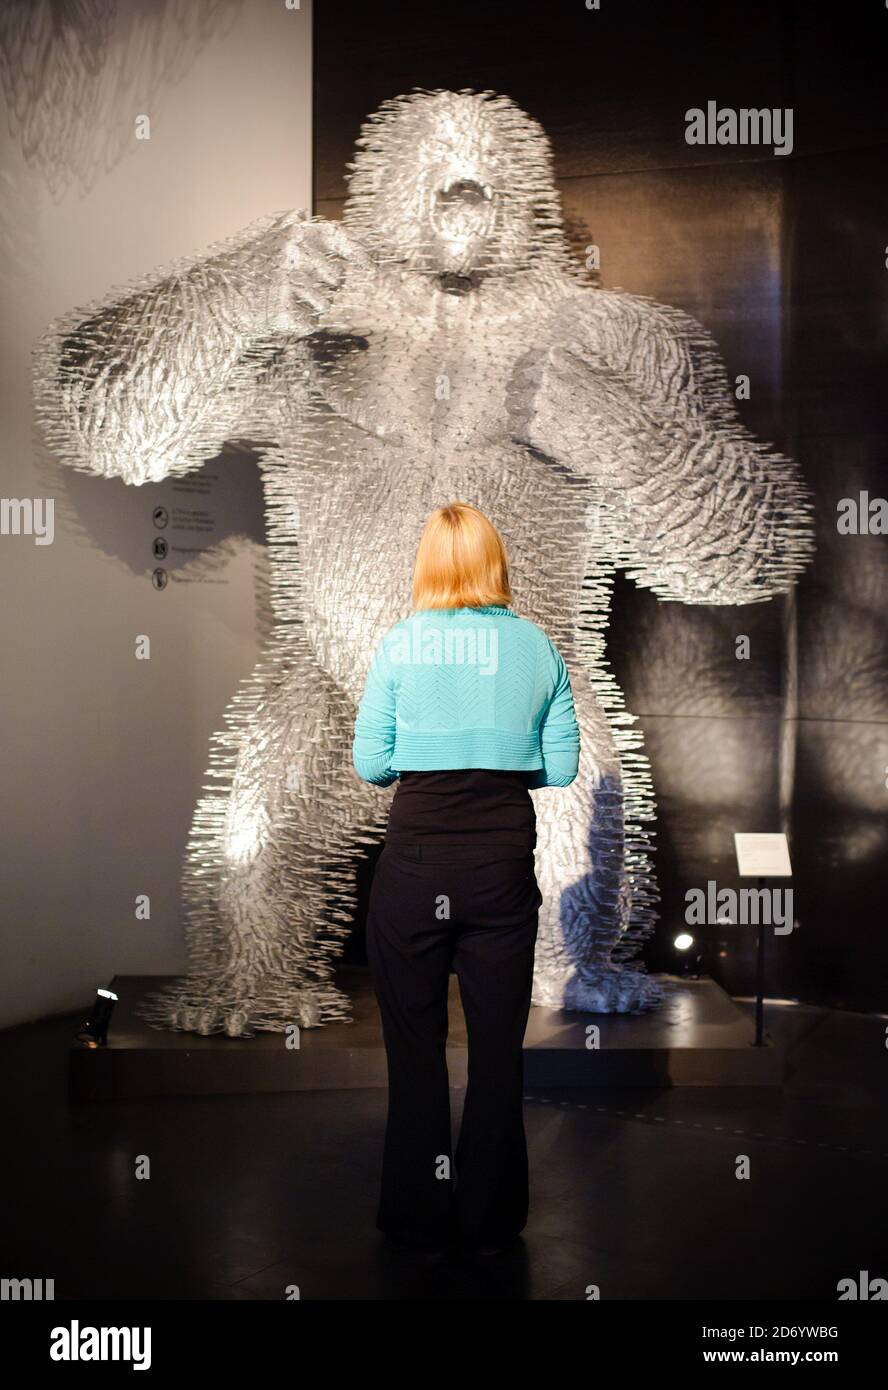 Les clients peuvent admirer « King Silver » de David Mach, à l'exposition The Power of Making, au musée Victoria and Albert, à l'ouest de Londres. Banque D'Images